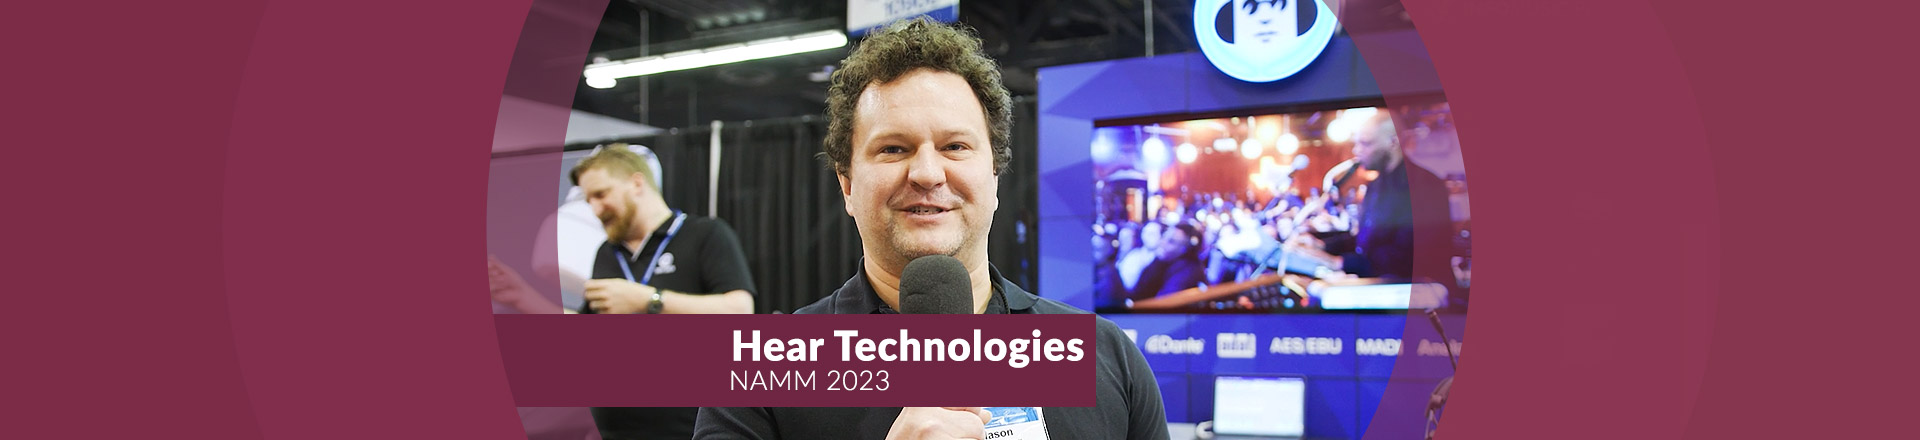 Hear Technologies - ciekawe systemy odsłuchu personalnego IEM [NAMM 2023]